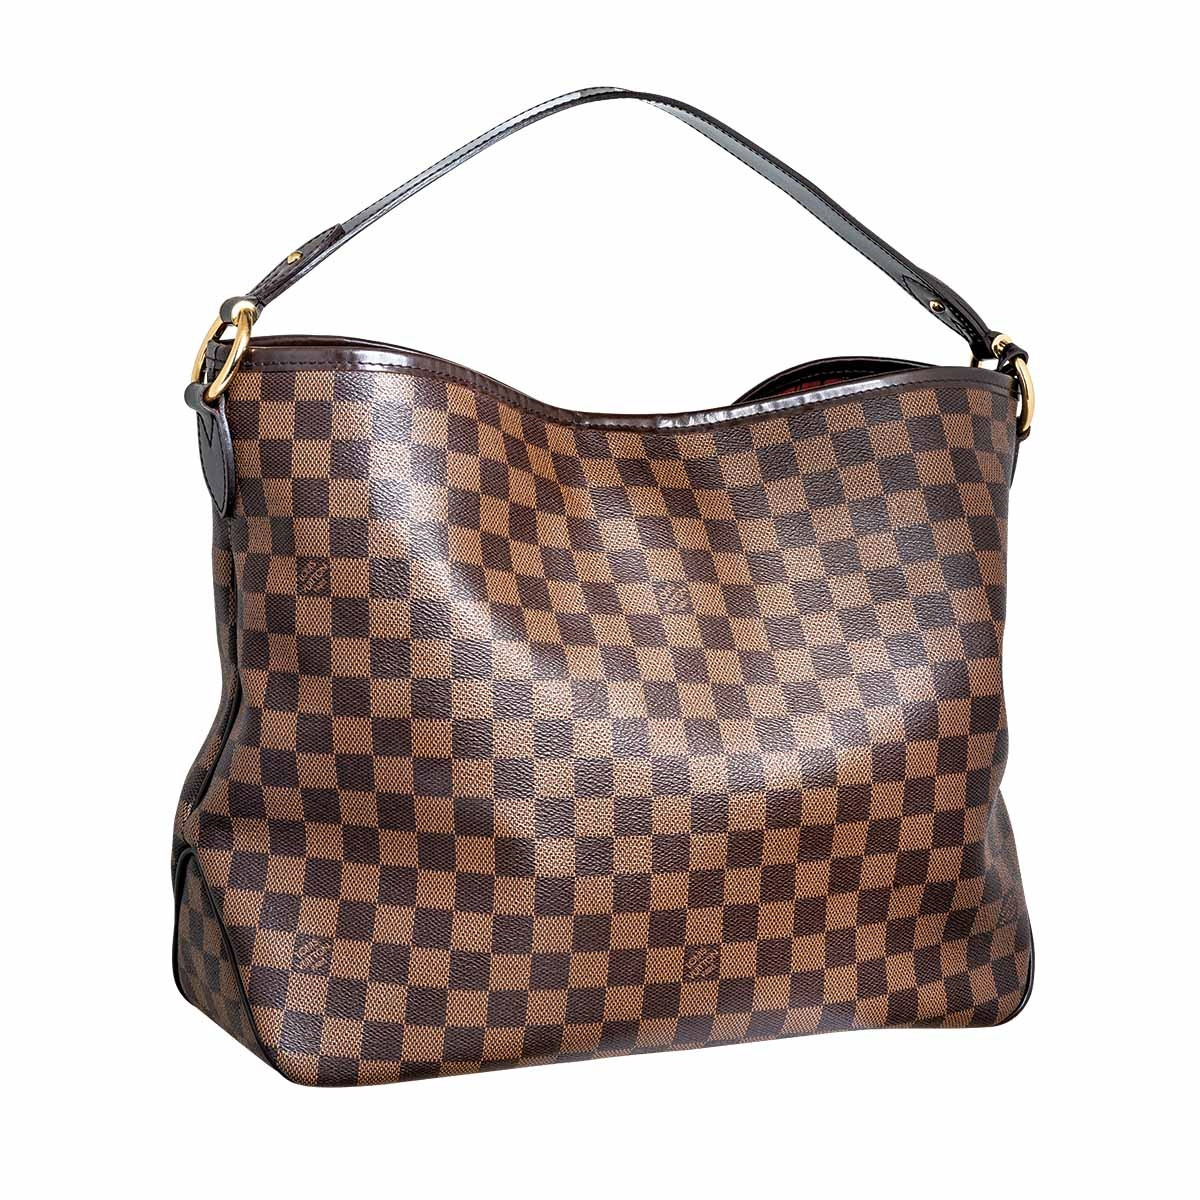 Vintage Louis Vuitton Damier Graceful MM Handbag